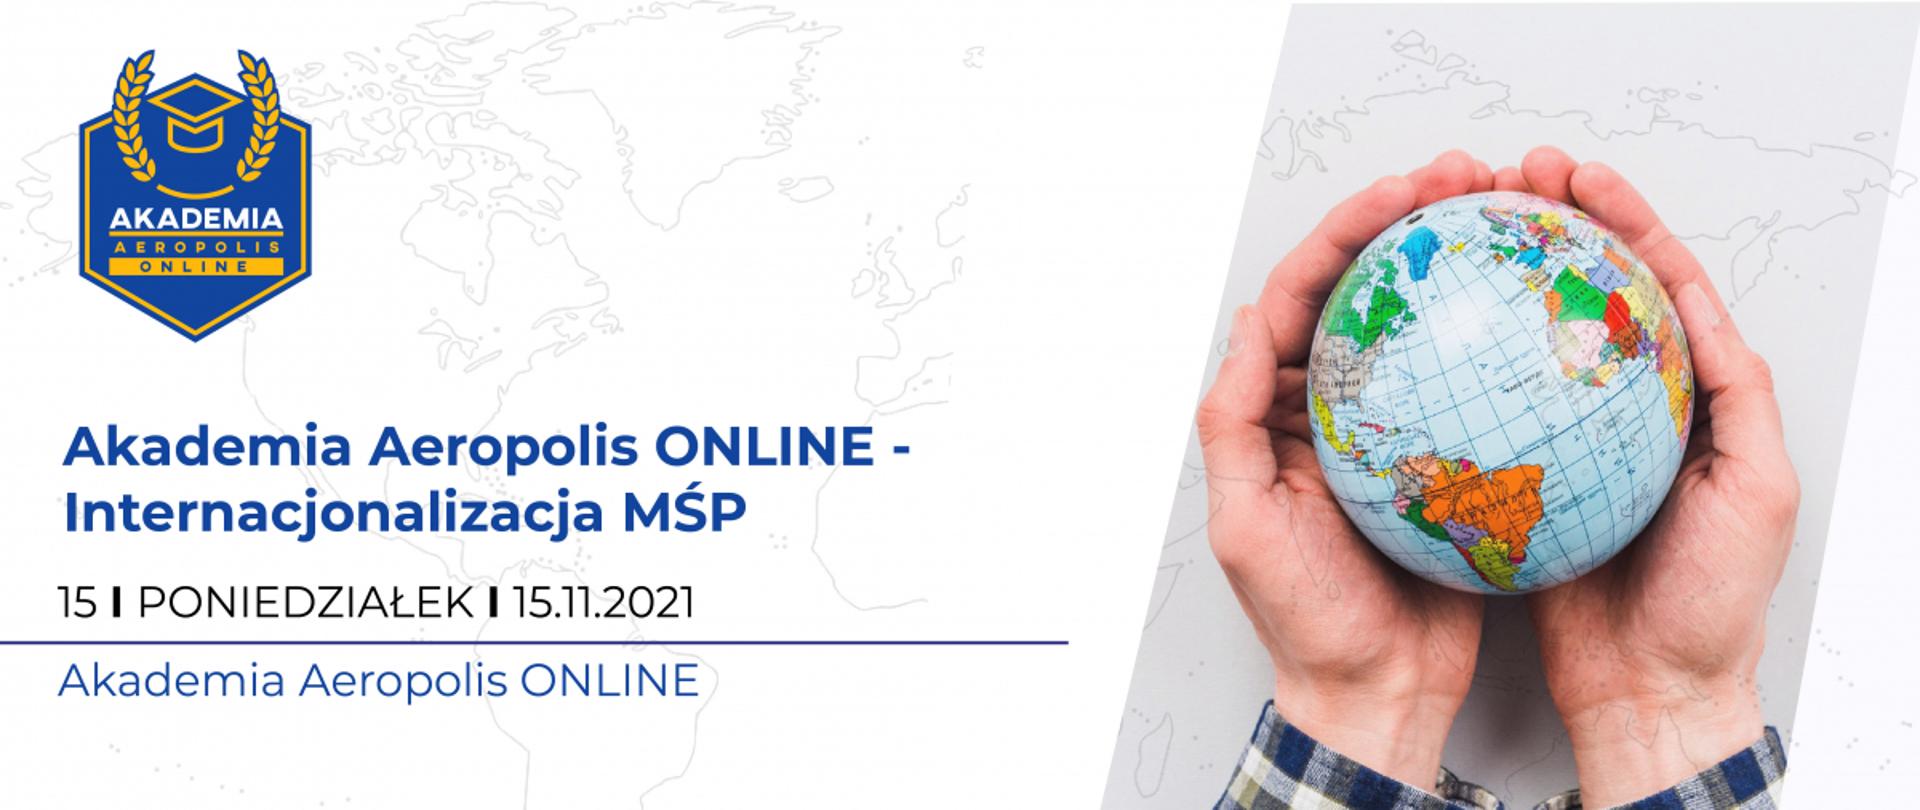 napis na grafice: Akademia Aeropolis Online - Internacjonalizacja MŚP, 15 listopada 2021